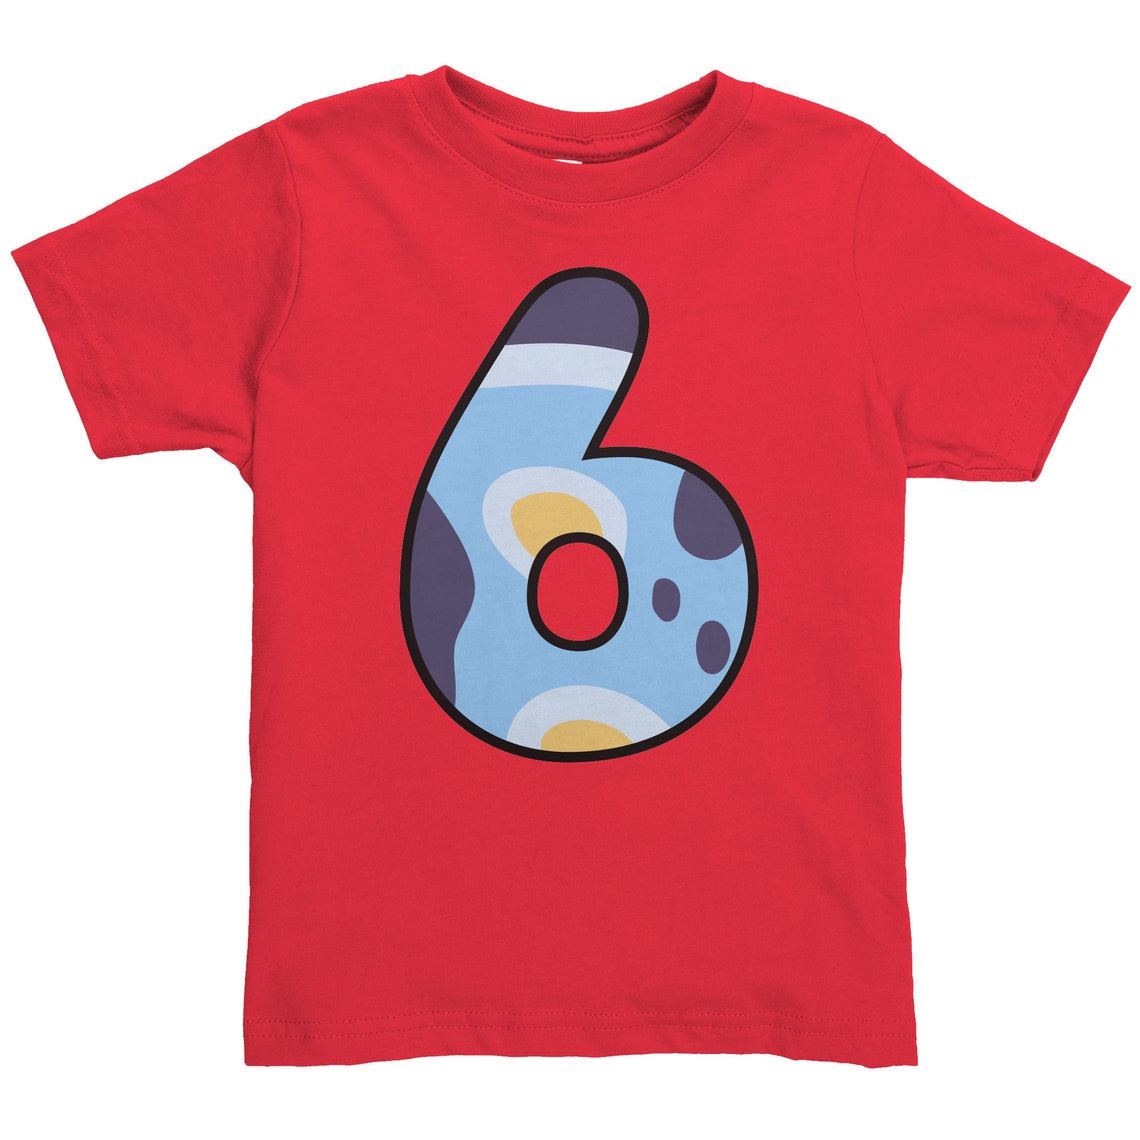 Bluey 6 Years Old Birthday Shirt - Etsy